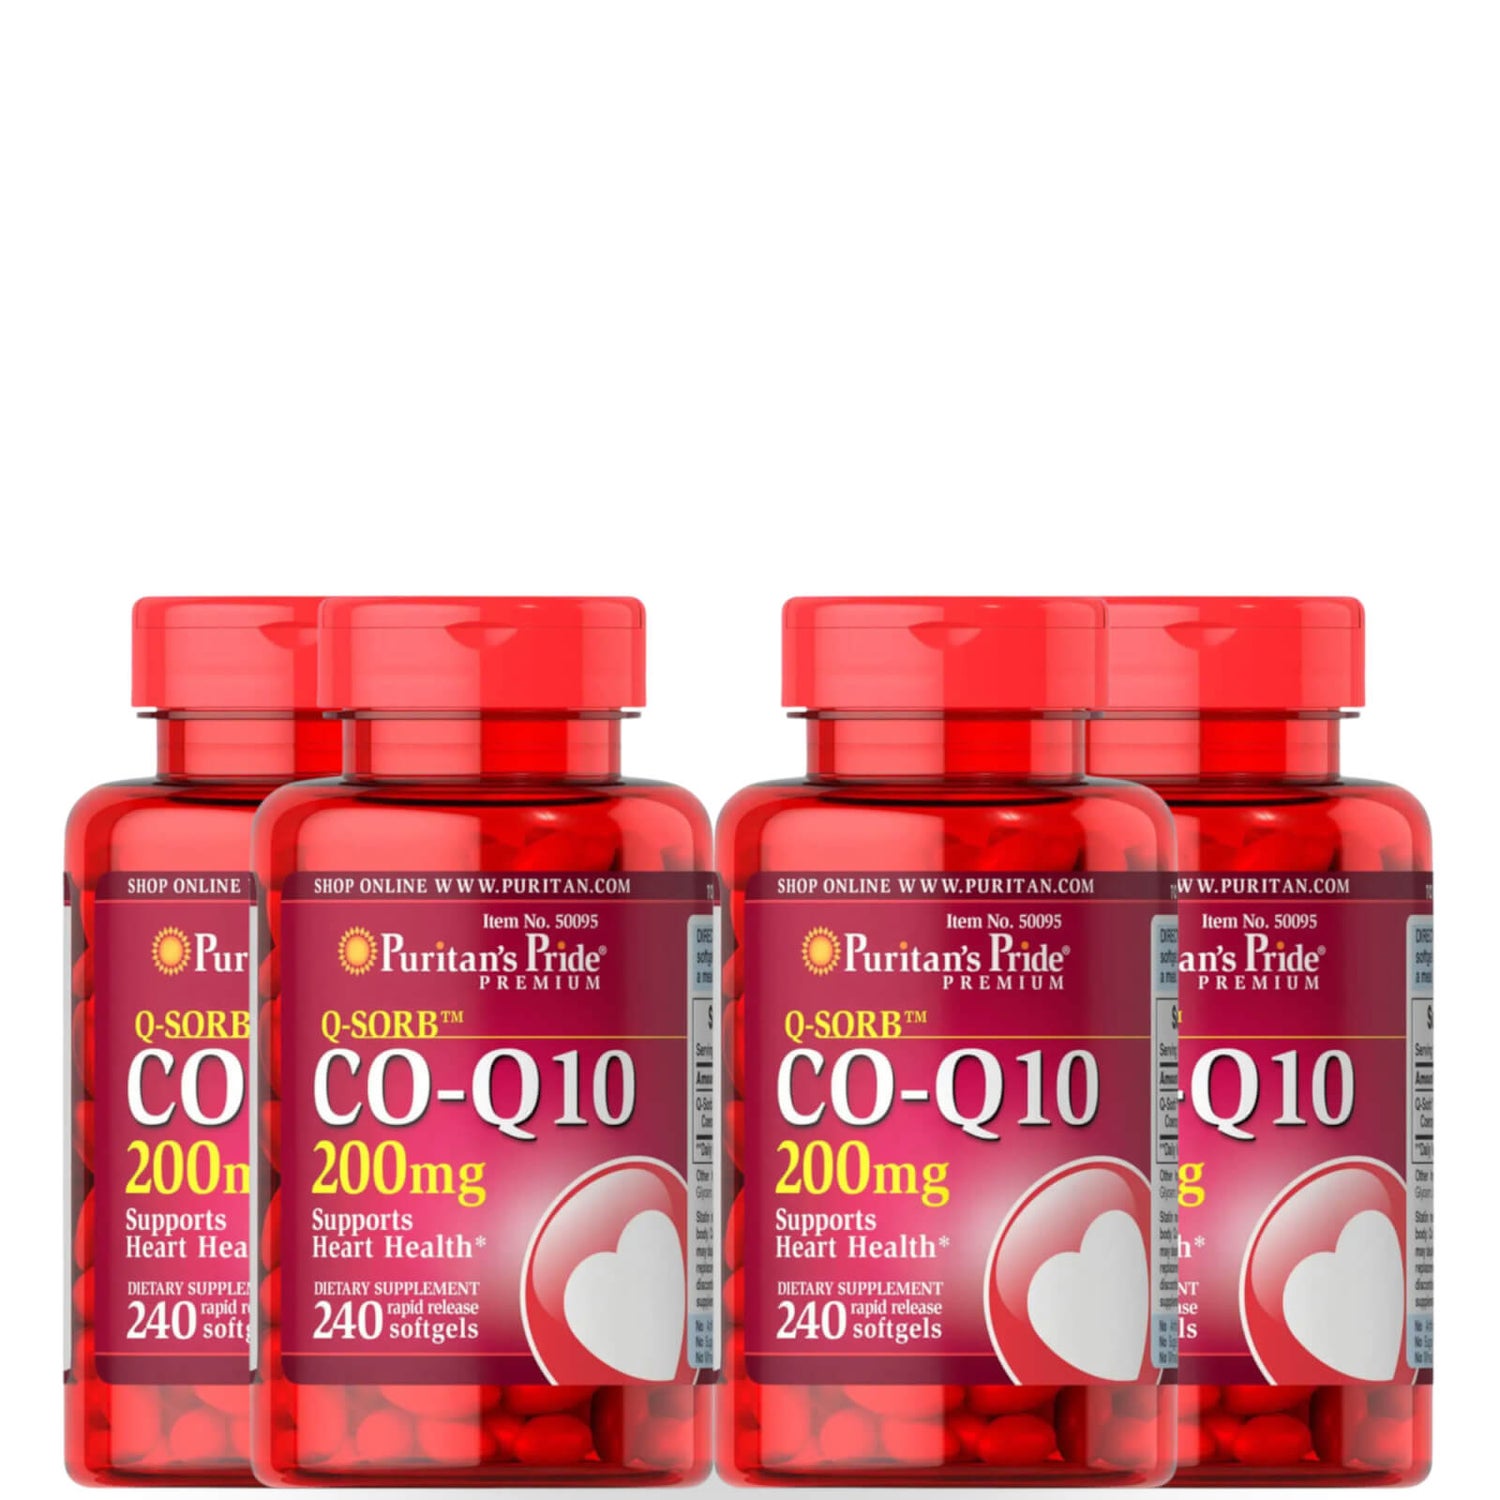 Q-SORB™ Co-Enzyme Q-10 200mg - 240 Softgels (4 Pack)